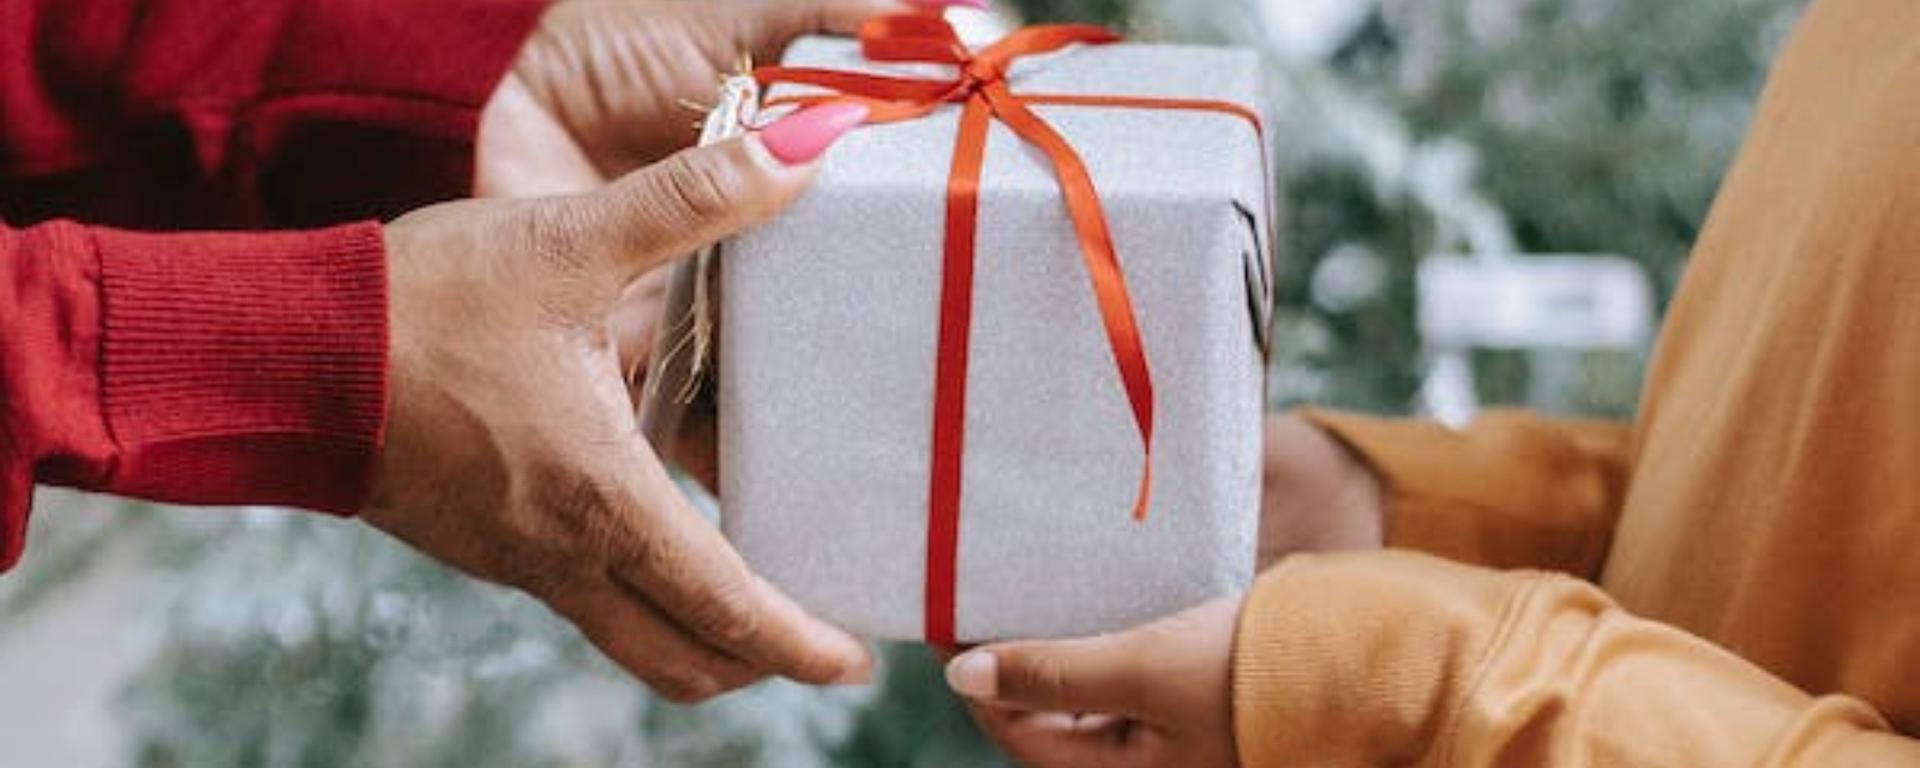 Navidad: los ejecutivos limeños también ajustan sus gastos en regalos navideños y por Año Nuevo, ¿en cuánto?